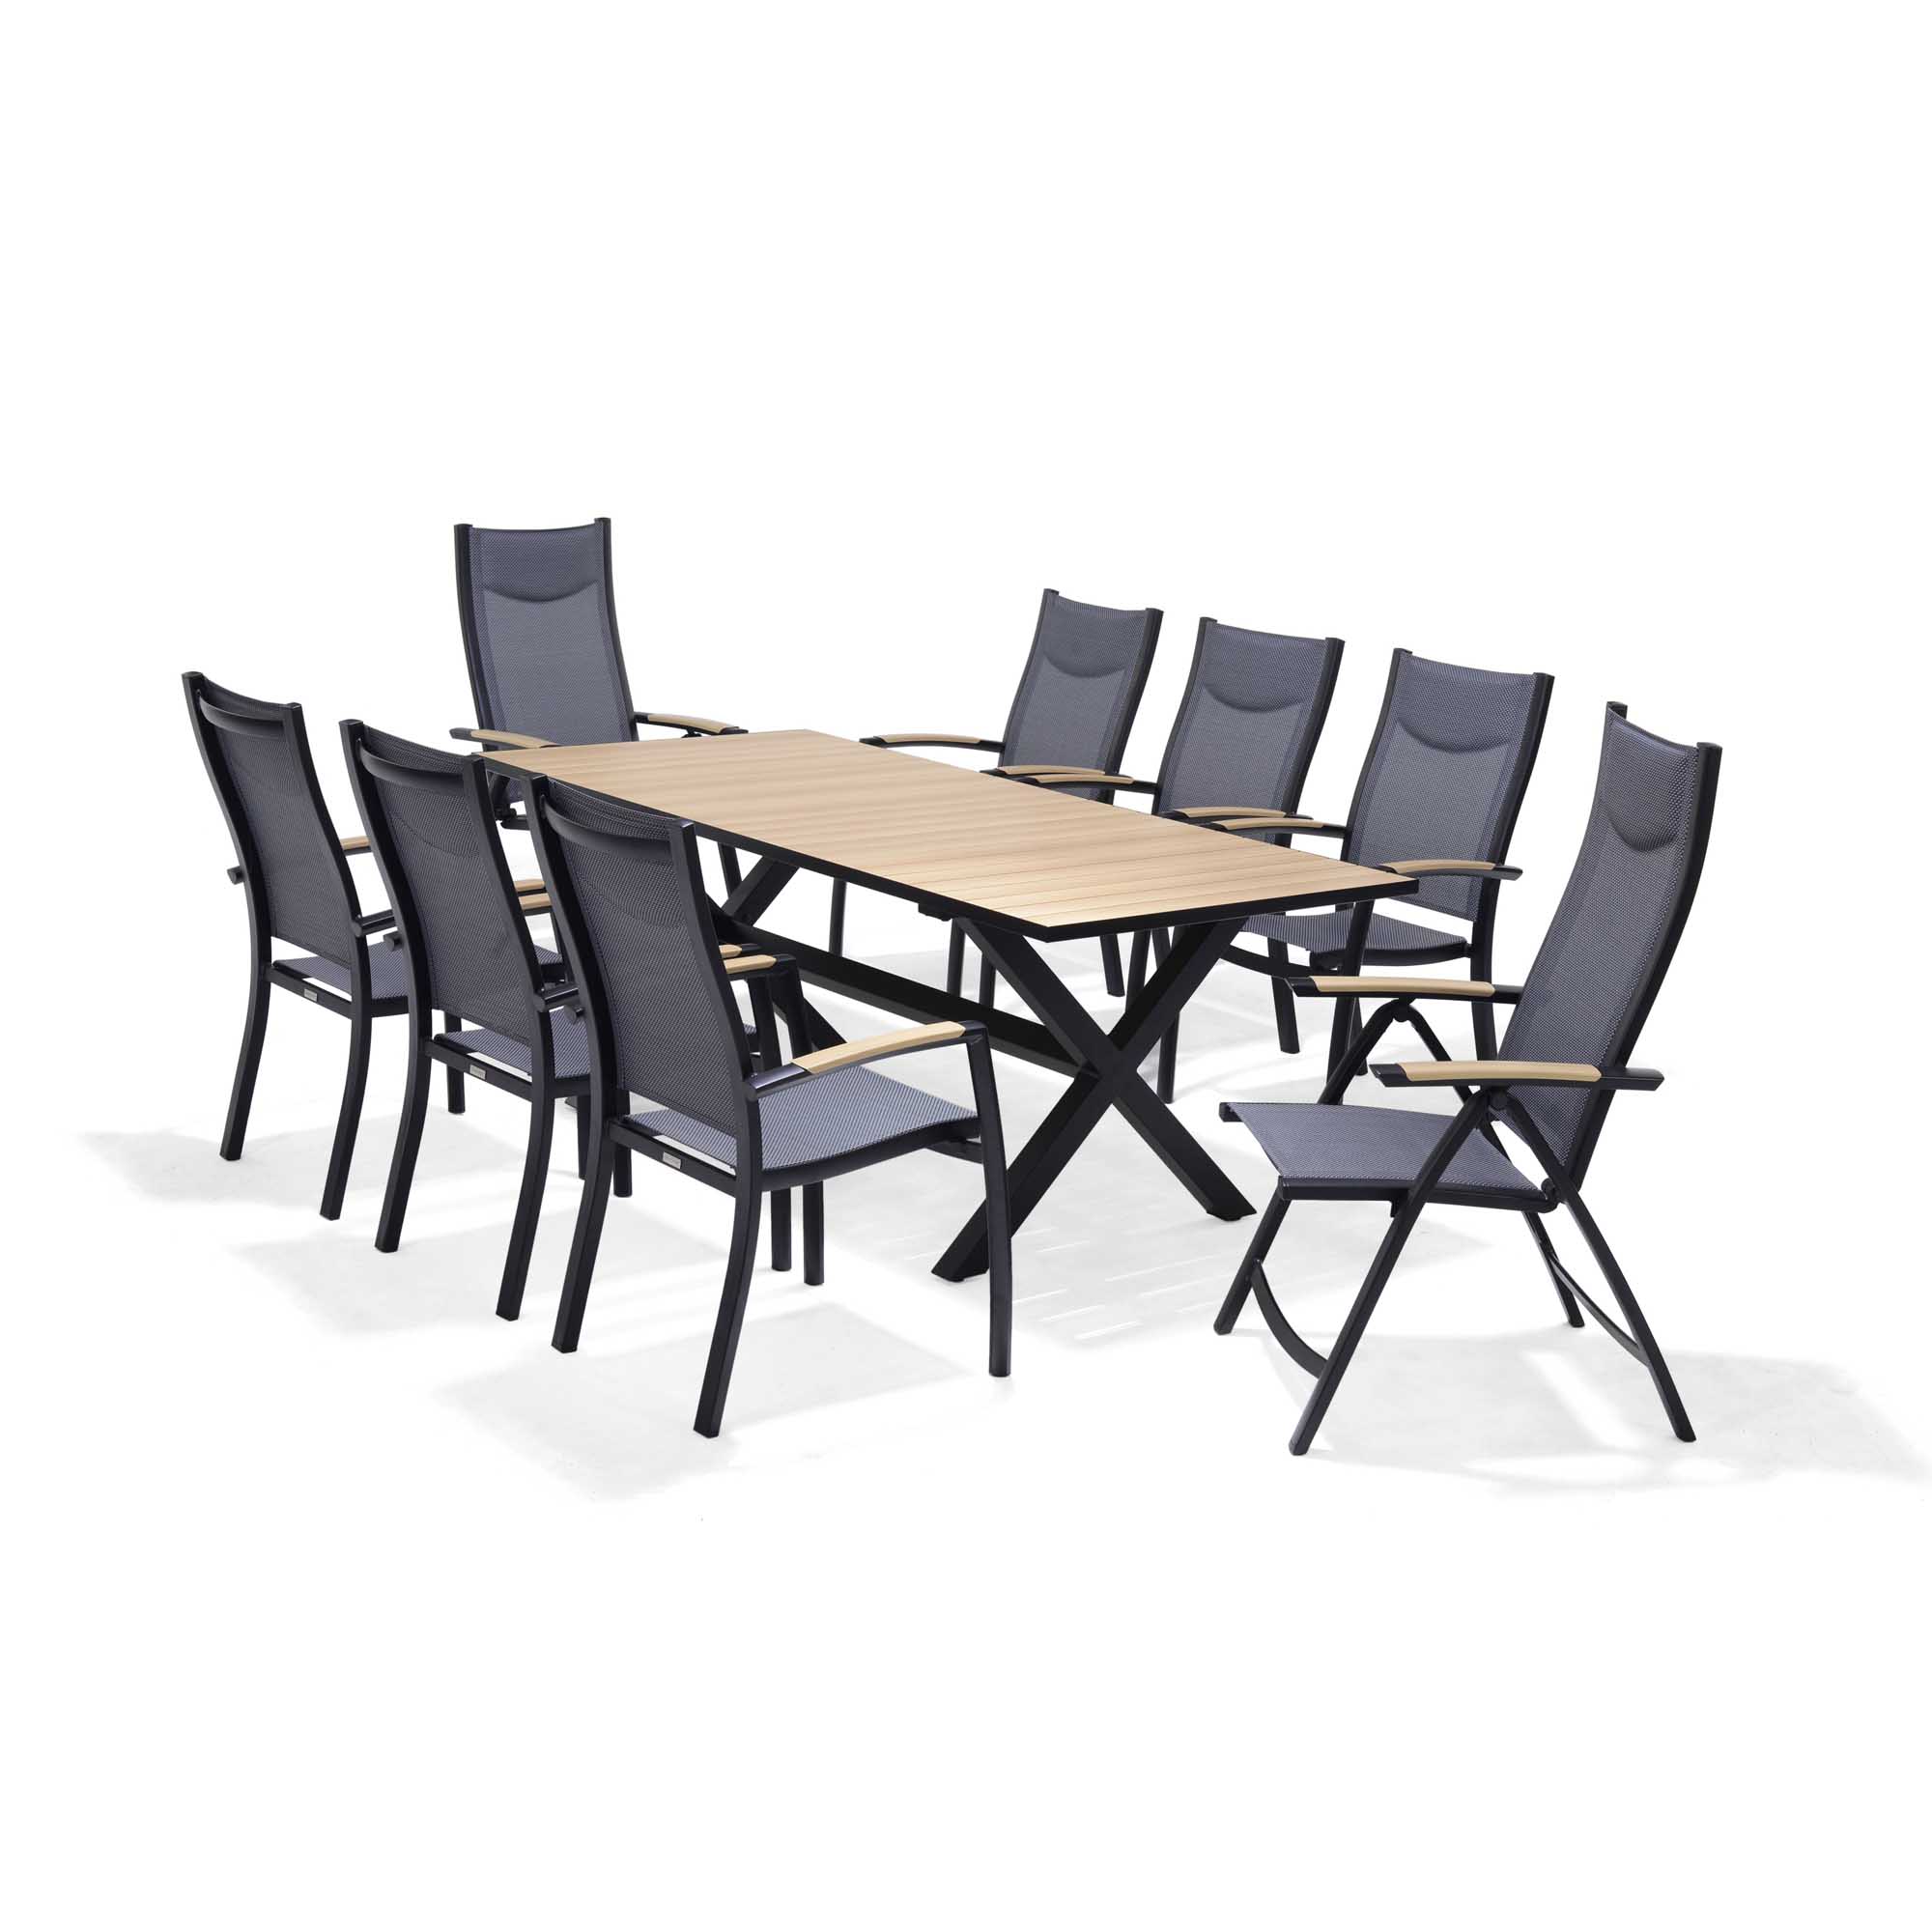 Lifestyle Garden Panama spisegruppe Teak/svart 6 stablestoler, 2 posisjonsstoler & bord 200x90 cm